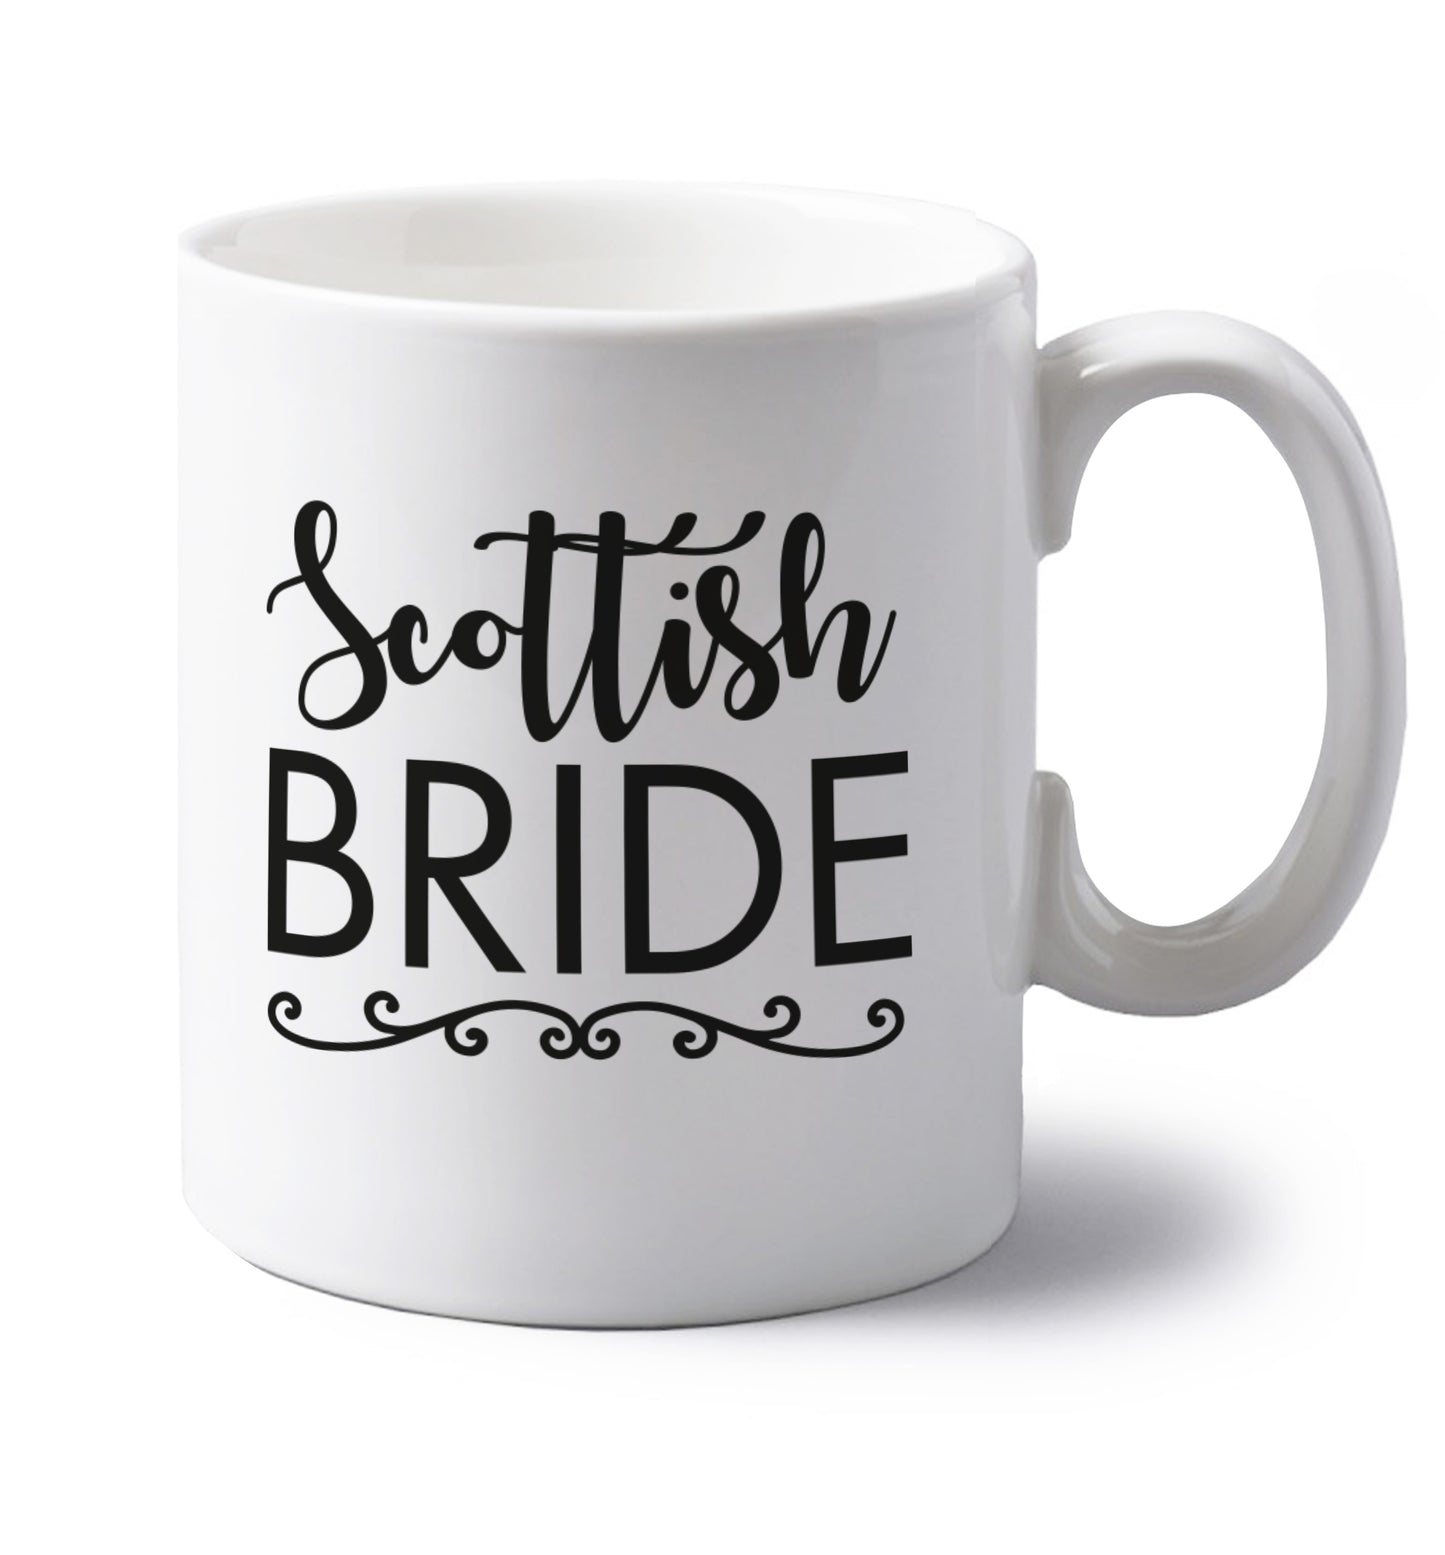 Scottish Bride left handed white ceramic mug 